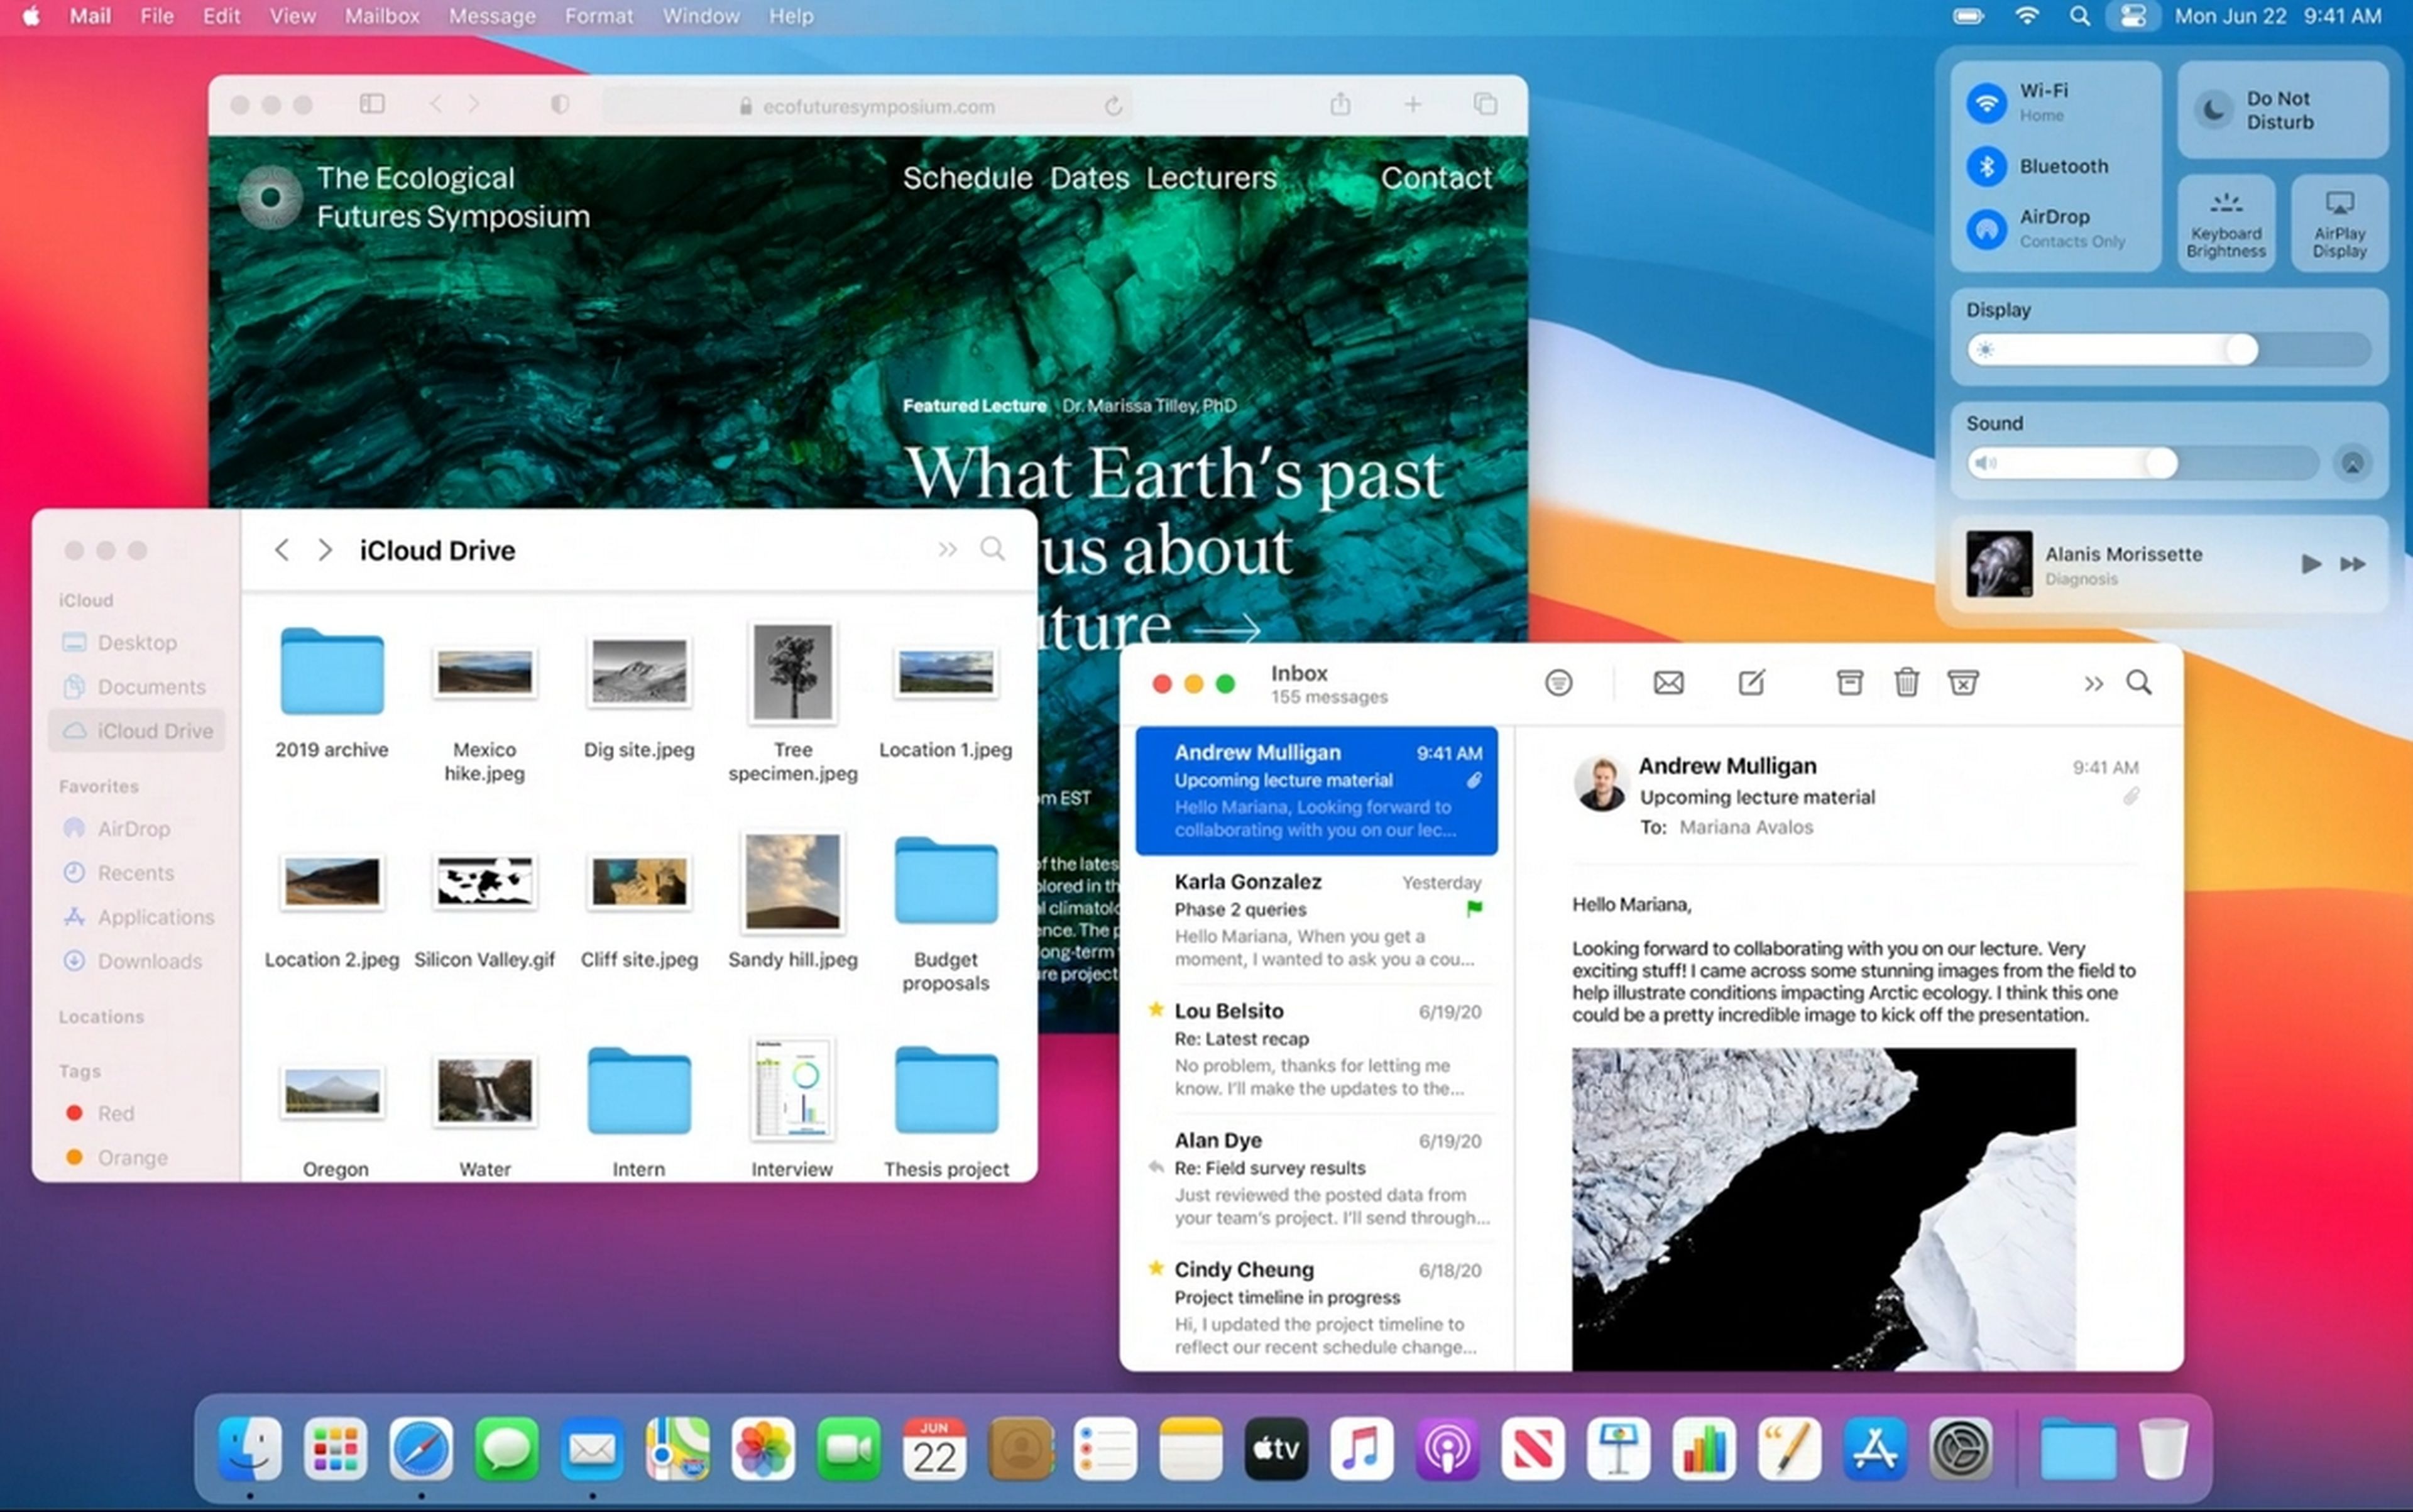 Llega macOS Big Sur, con un rediseño visual, mejores notificaciones, y el Safari más rápido